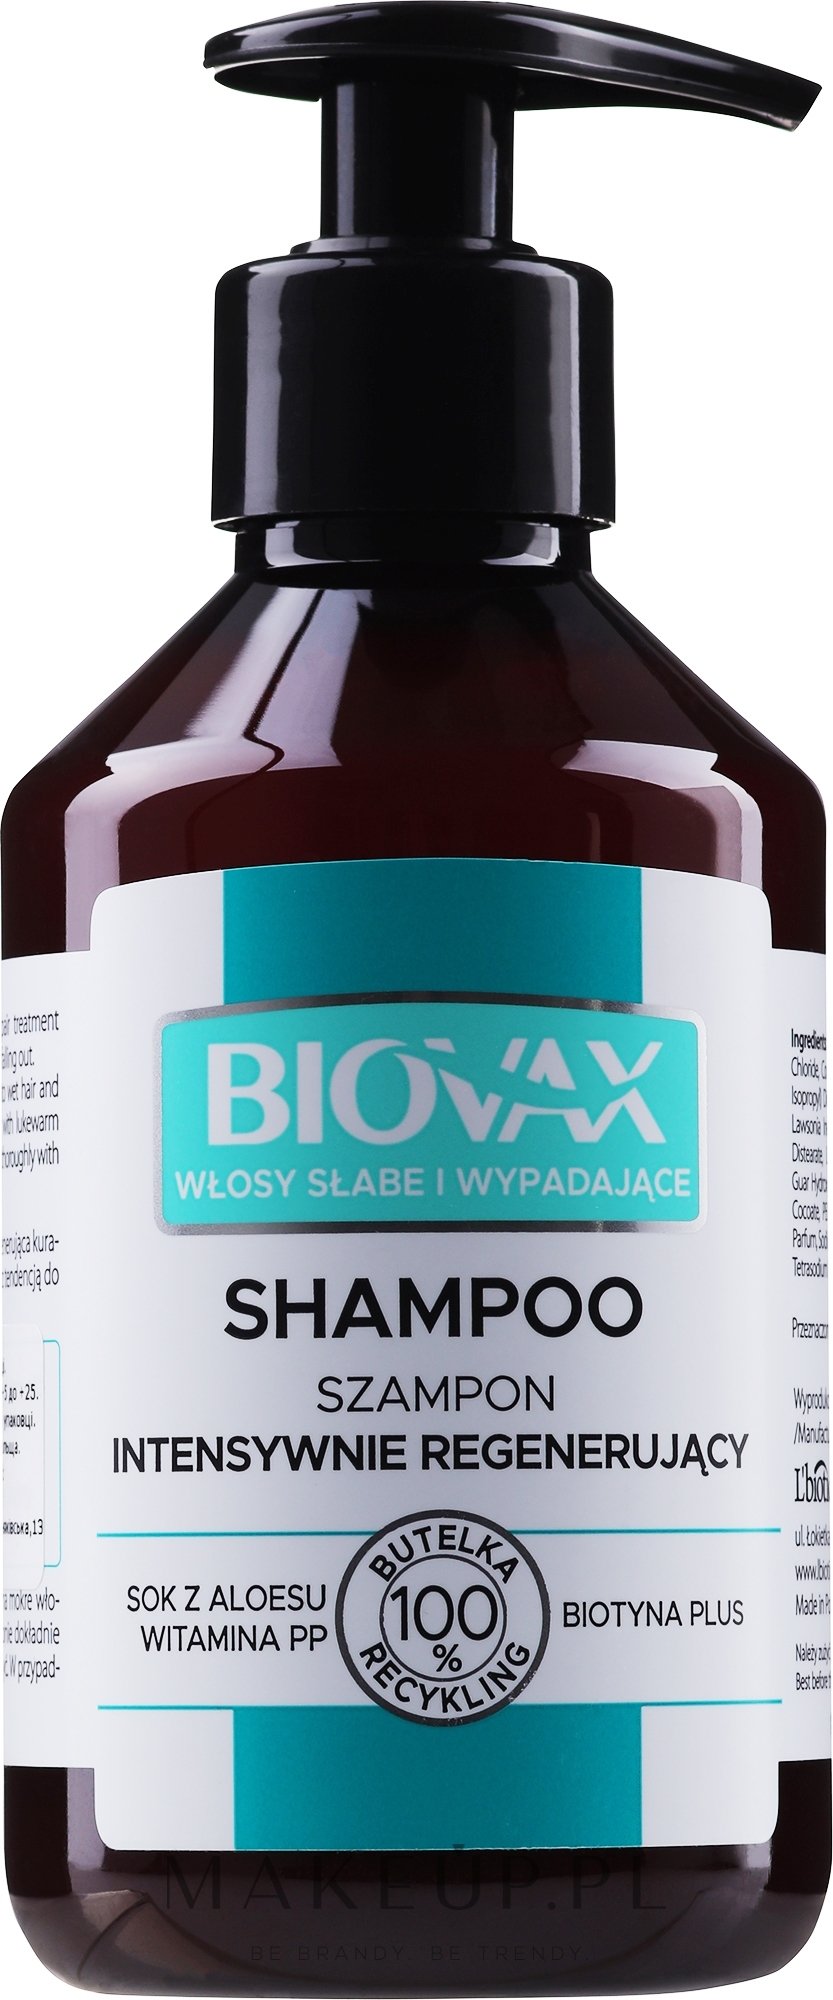 biovax szampon wlosy oslabione wypadajace opinie